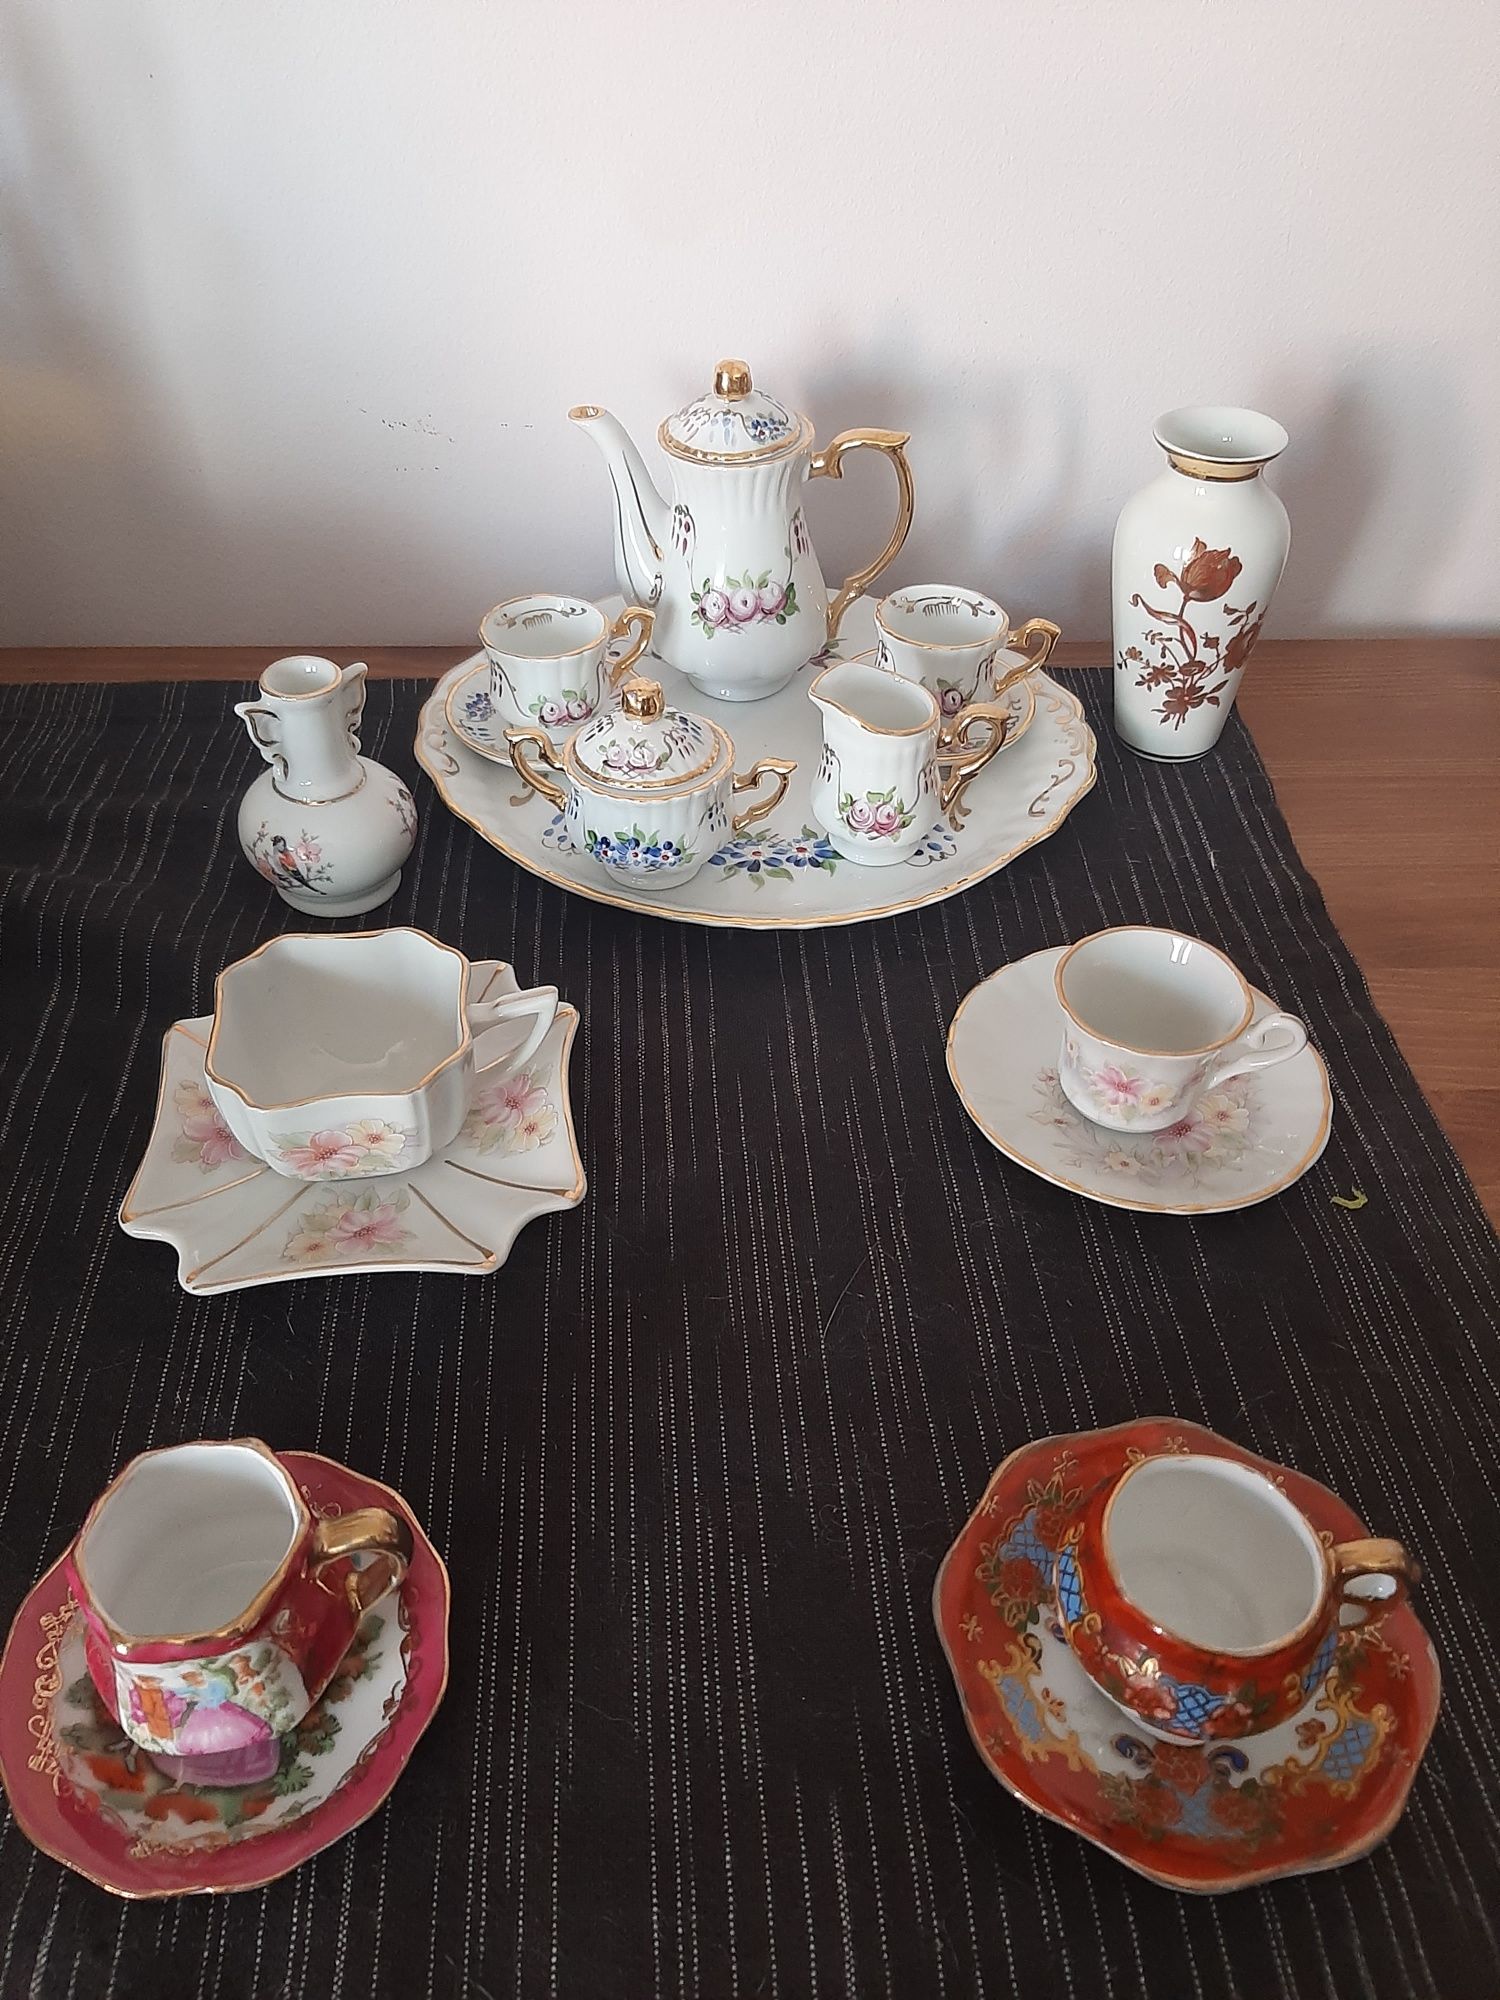 chávenas antigas portuguesas miniaturas serviço  chá